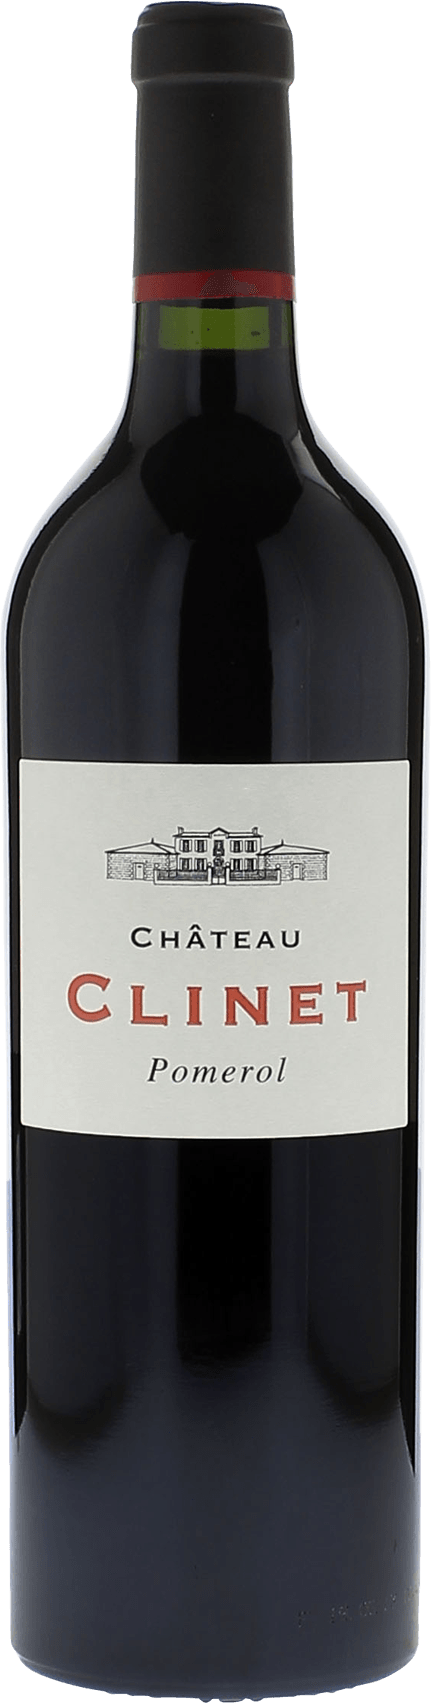 Clinet 2010  Pomerol, Bordeaux rouge